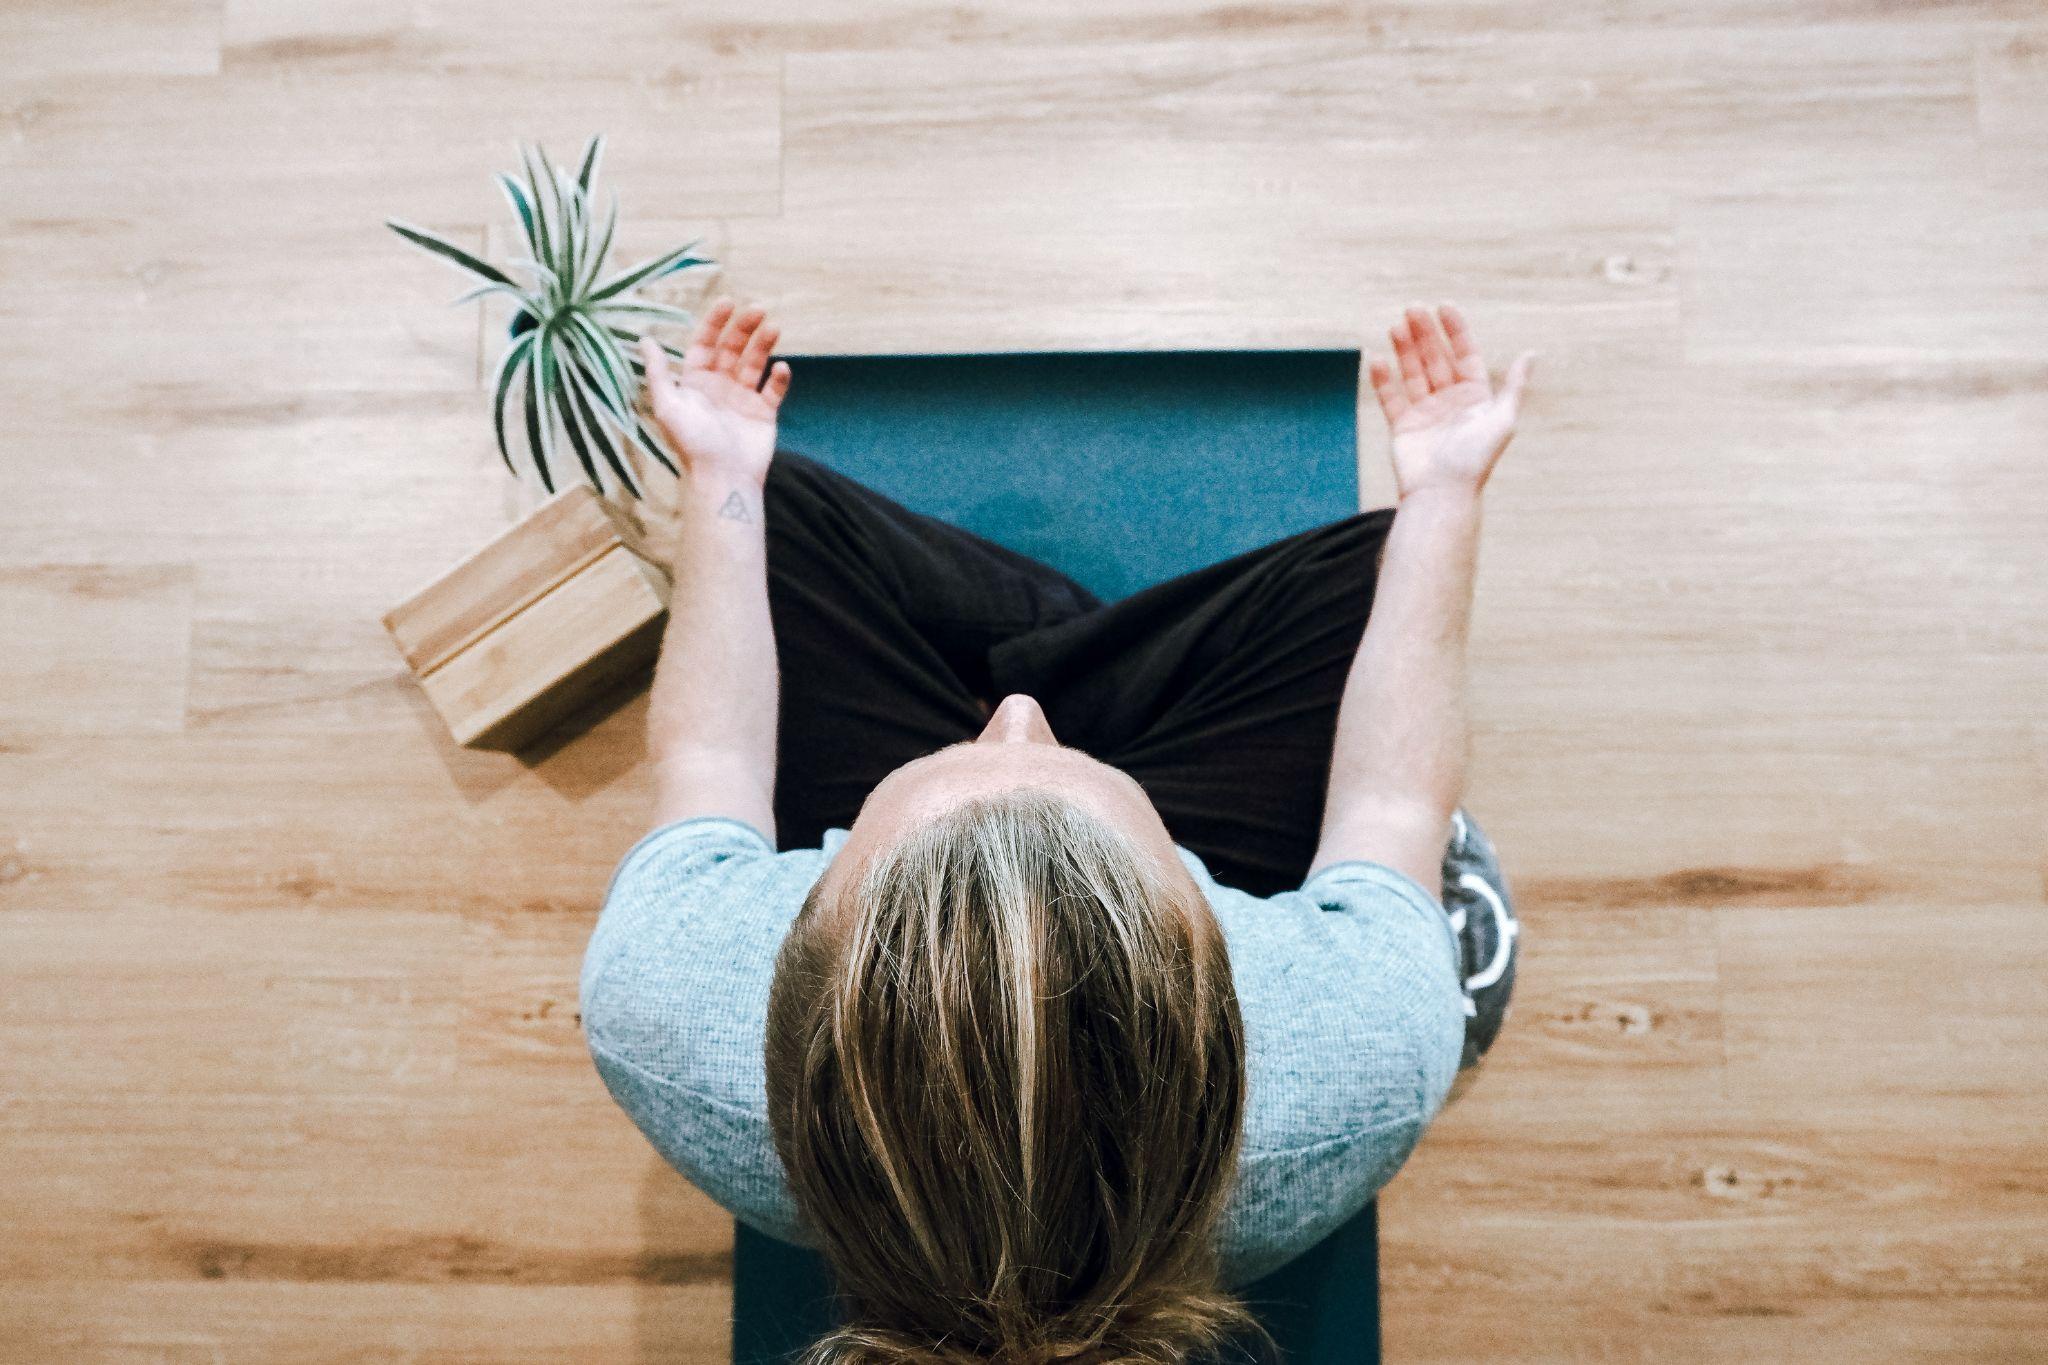 woman doing yoga meditation at home